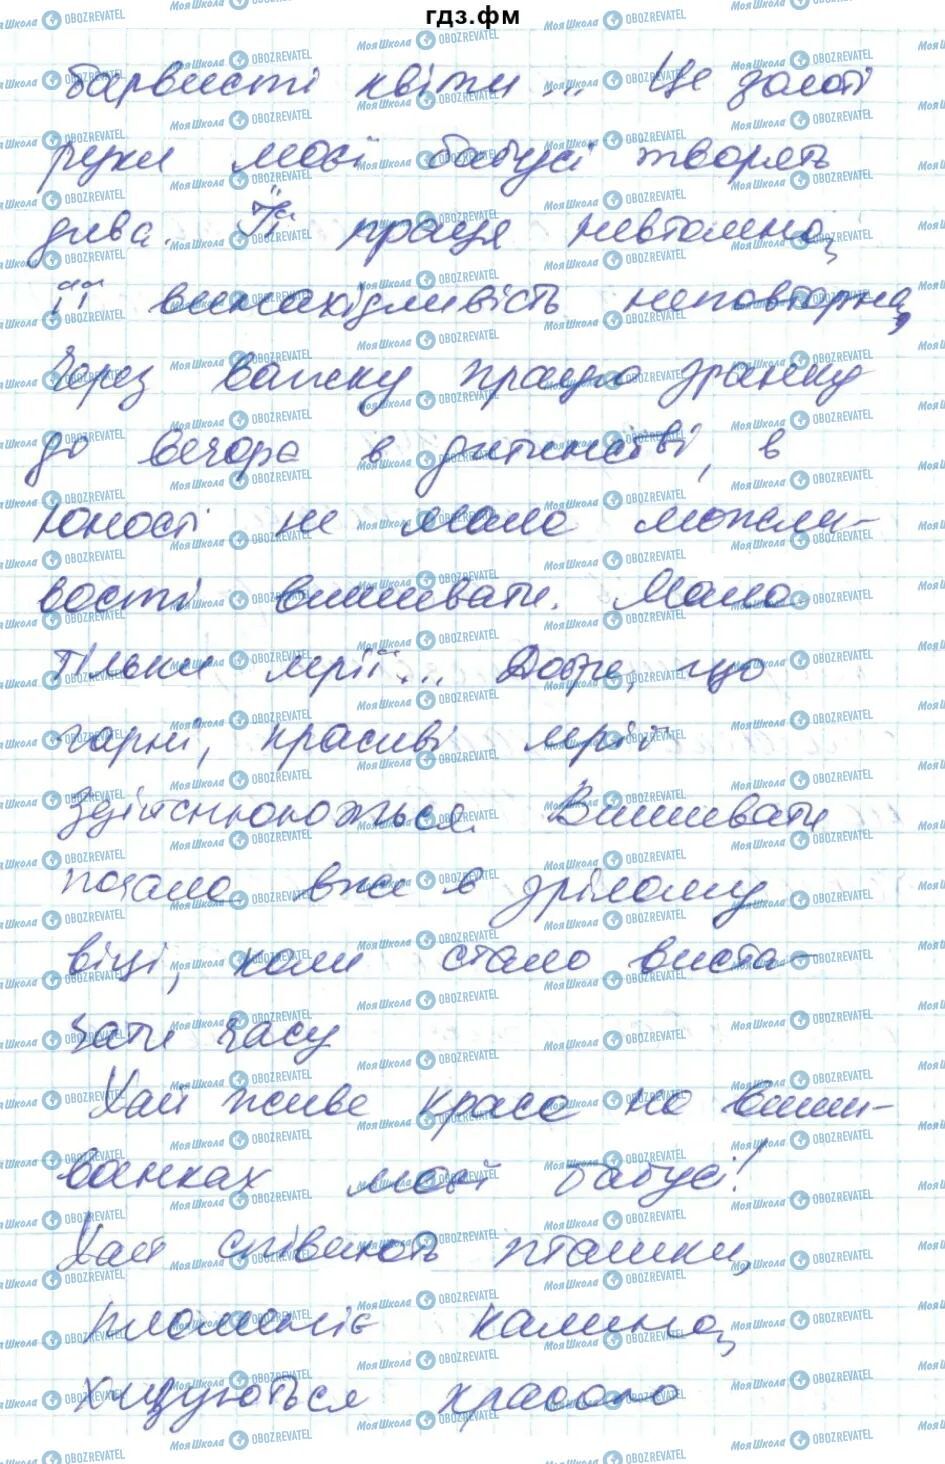 ГДЗ Українська мова 6 клас сторінка 348